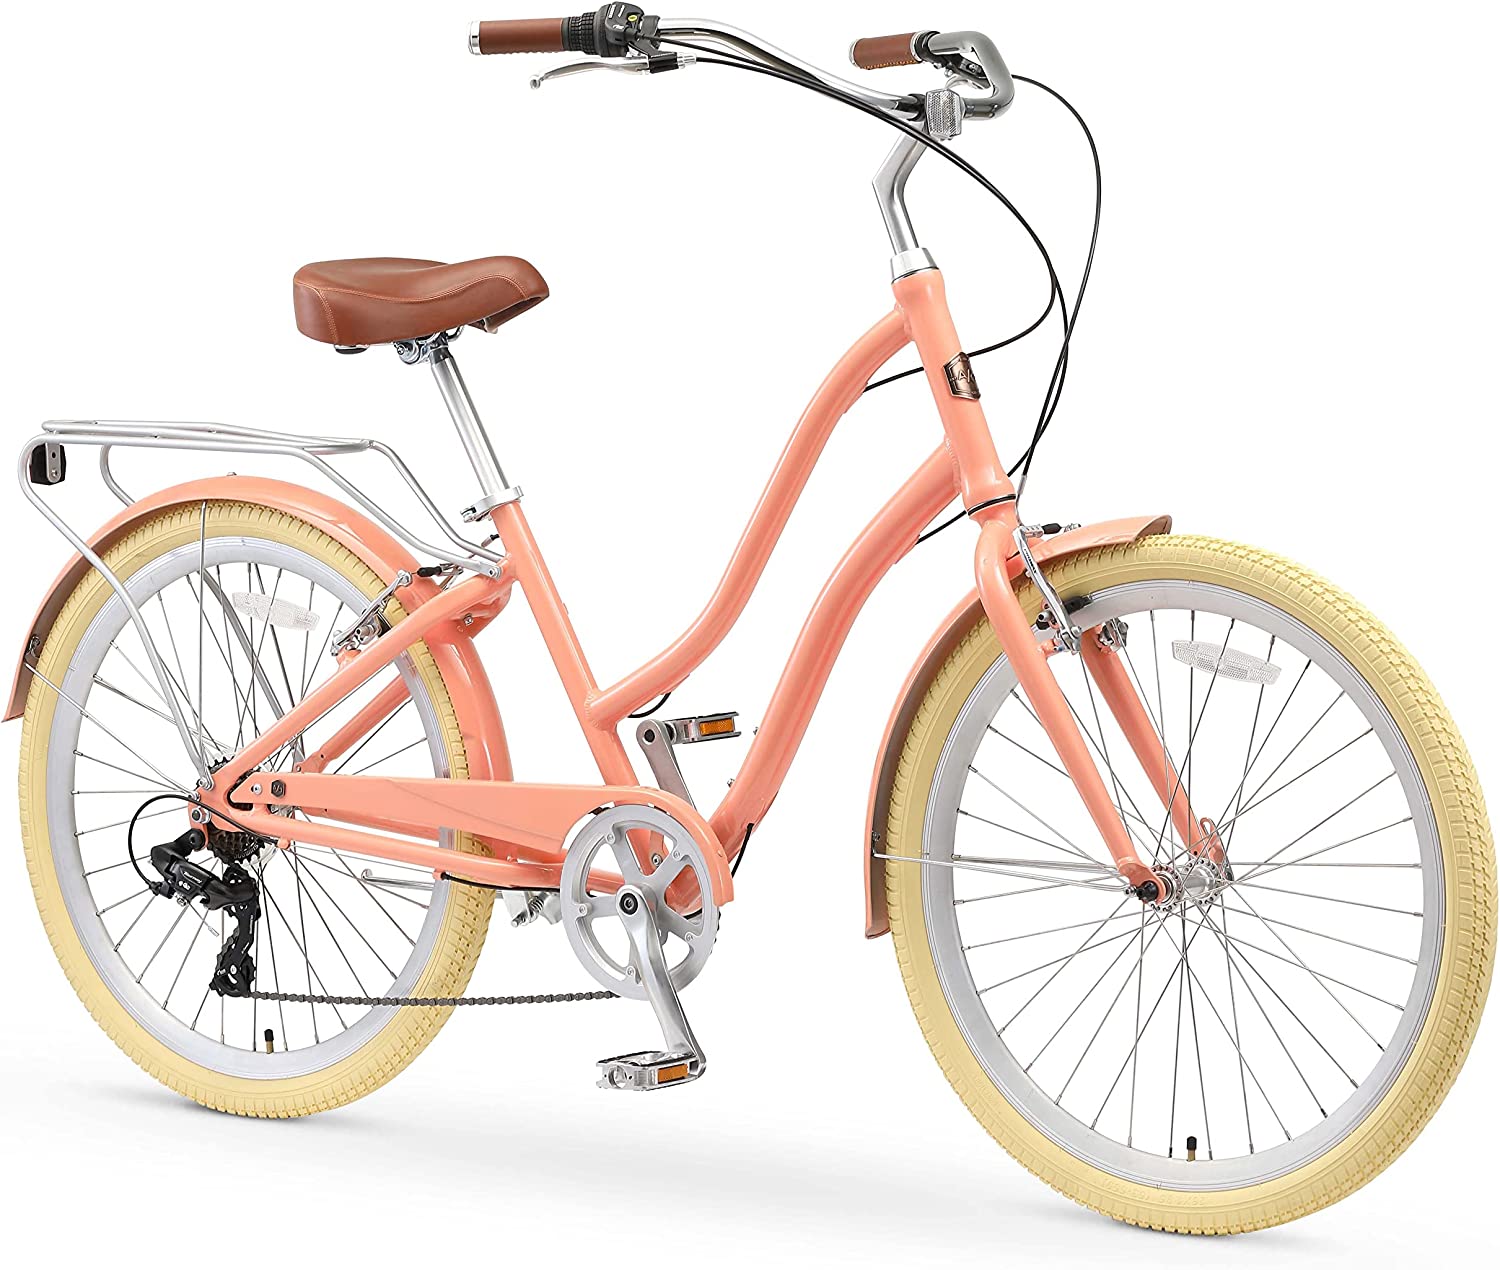 sixthreezero Hybrid-Bicycles EVRYjourney Womens Bike